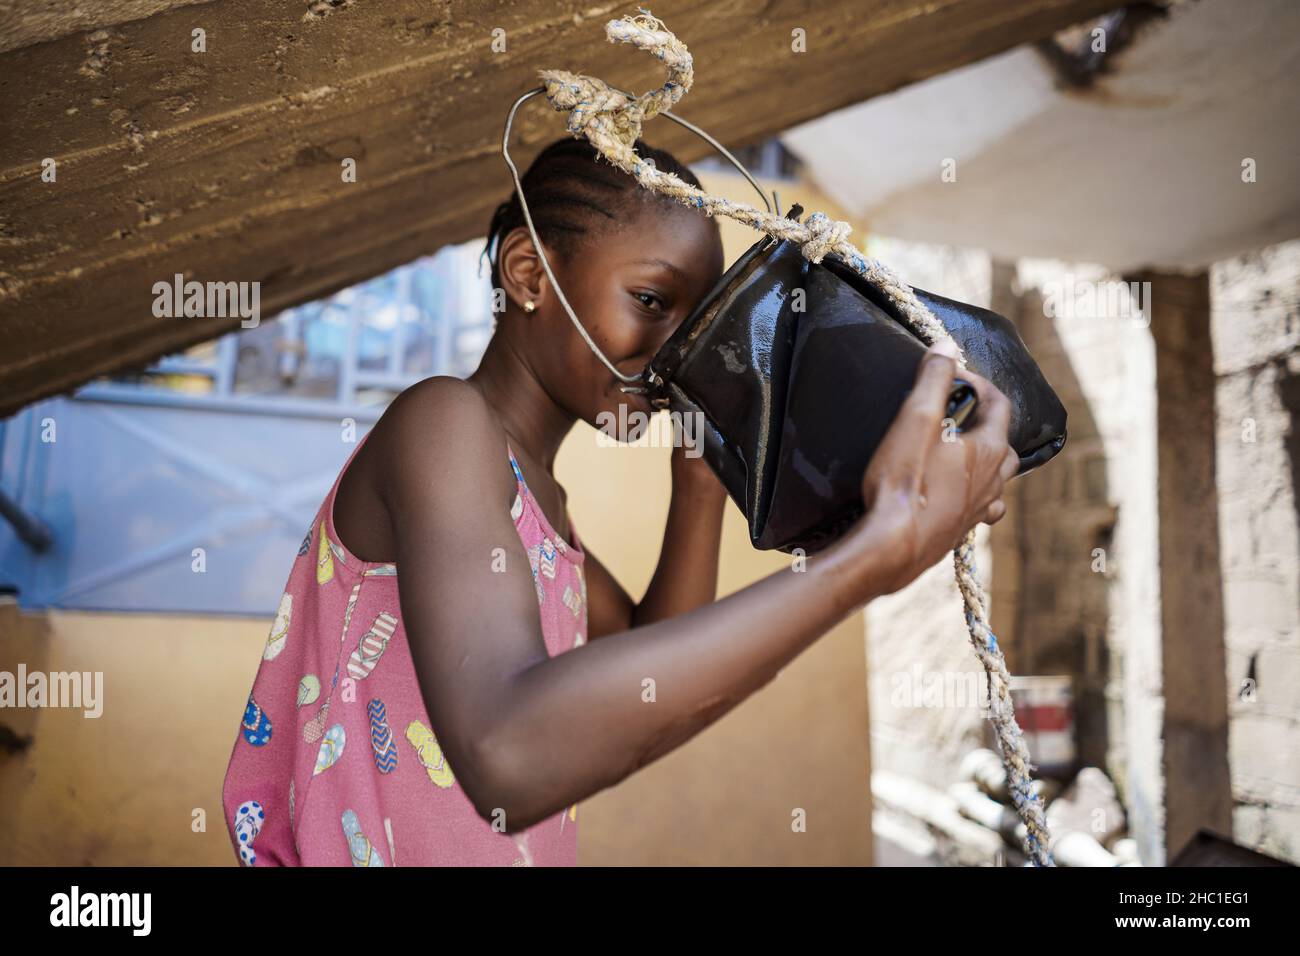 Une jeune fille africaine noire mignonne à regarder un appareil photo tout en buvant de l'eau douce à partir d'un seau en caoutchouc suspendu au toit.Concept d'approvisionnement en eau domestique Banque D'Images